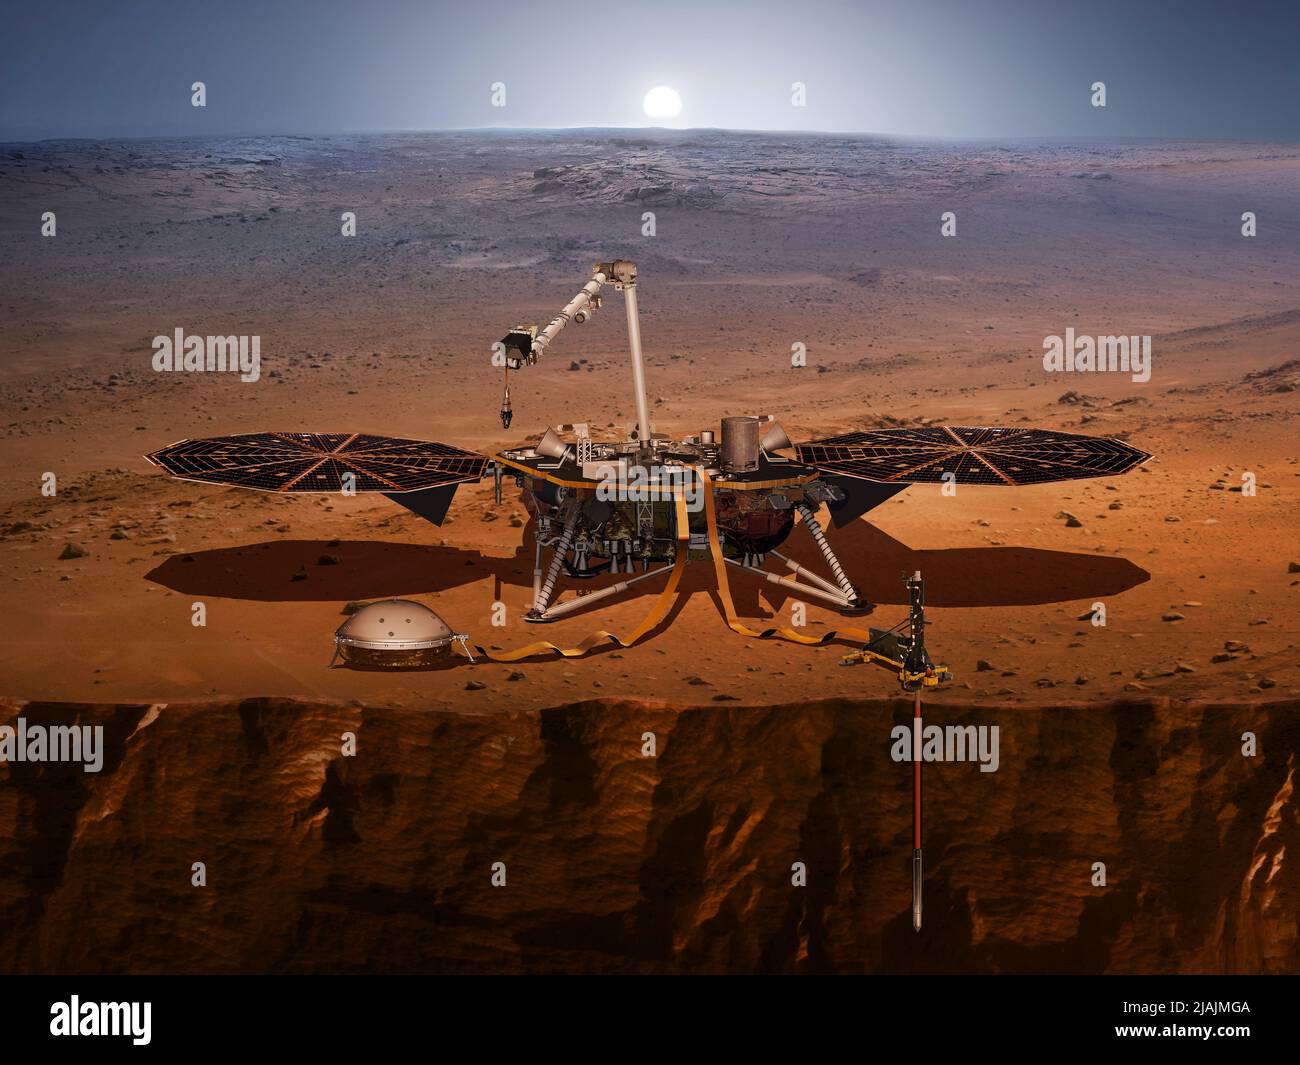 Il concetto dell'artista della lander Insight, dei suoi sensori, delle fotocamere e degli strumenti. Foto Stock